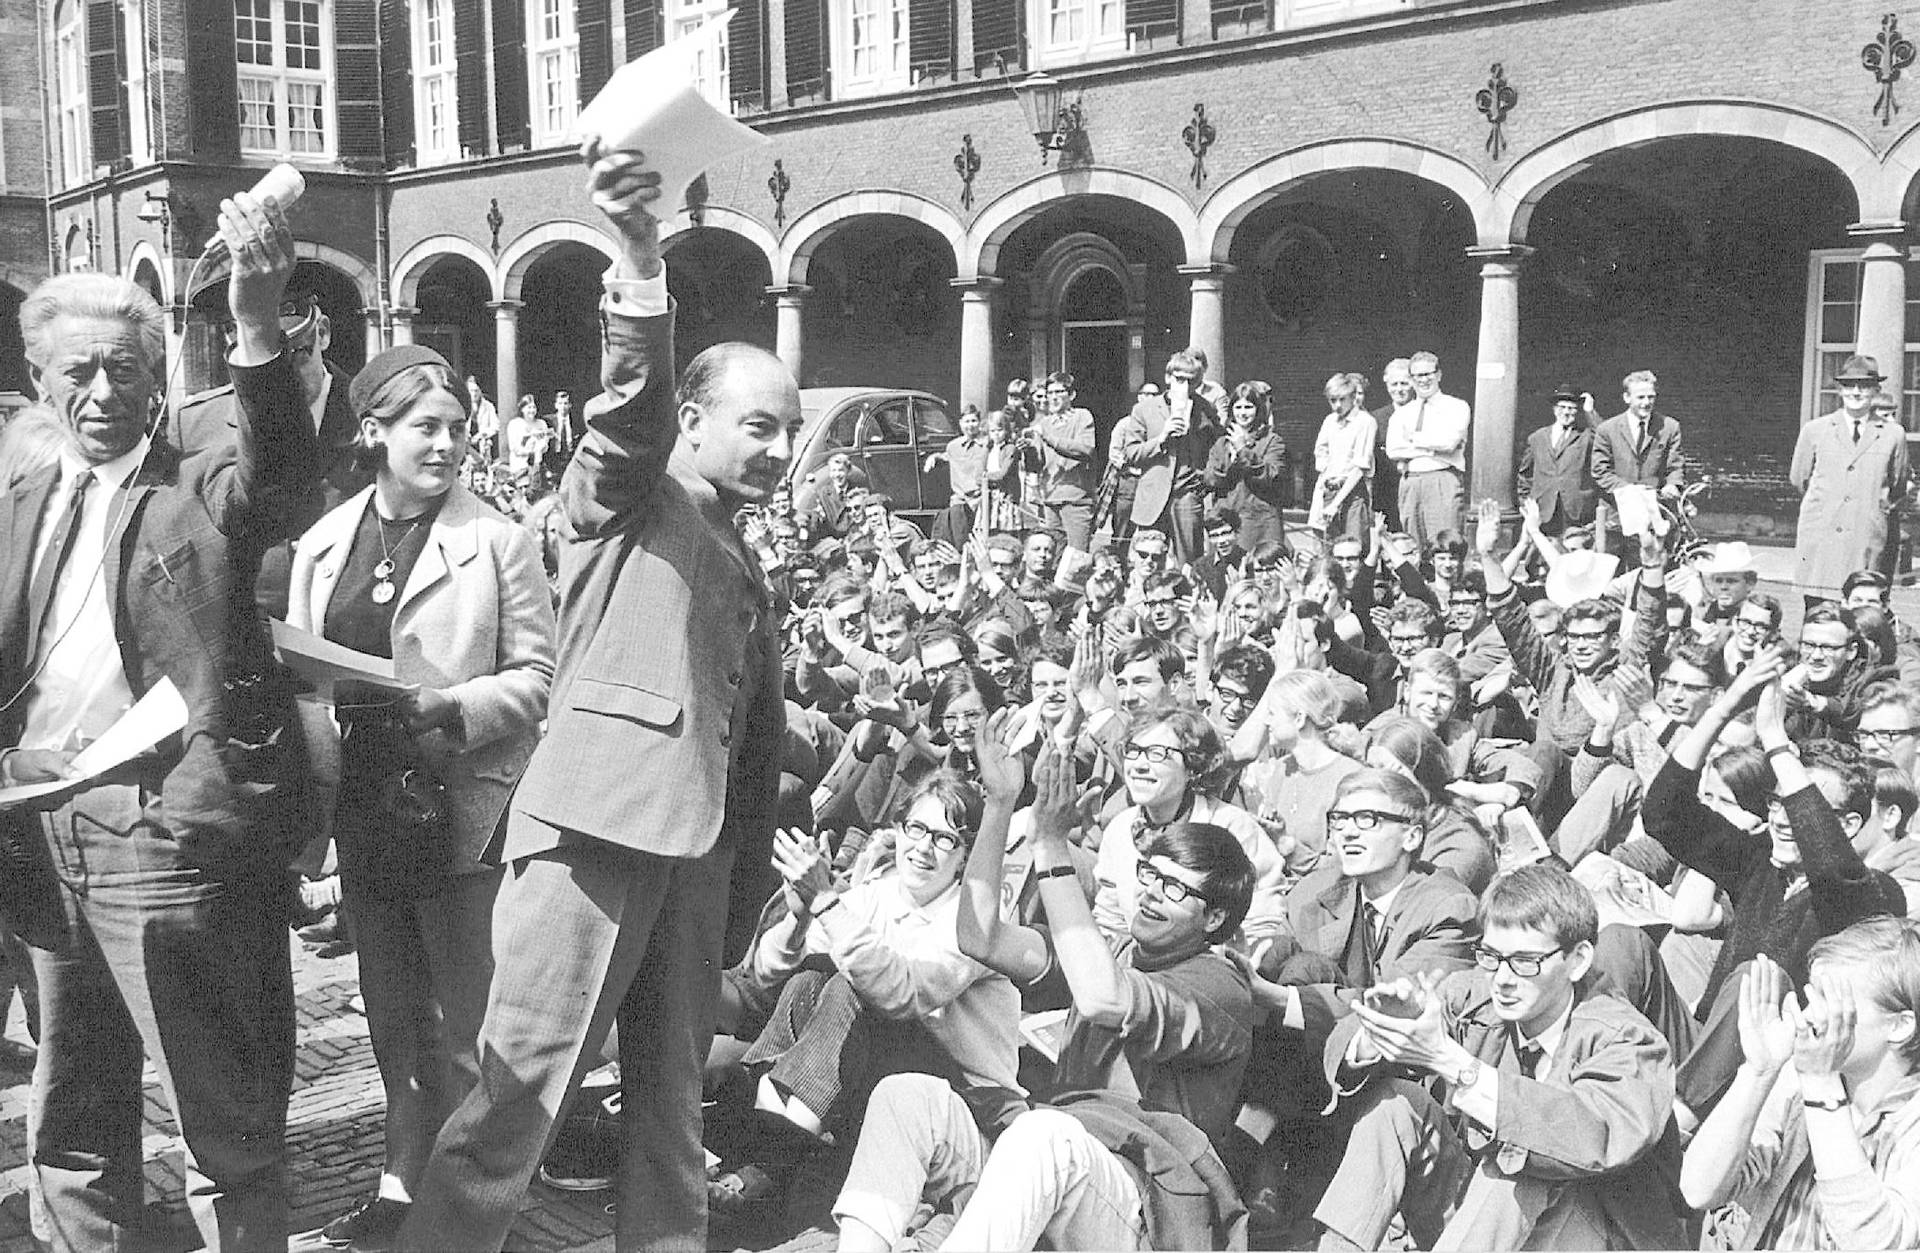 Drs. W.K.N. Schmelzer zwaait met de petitie die hem op het Binnenhof is aangeboden door de deelnemers aan de vredesmars van Pax Christi op 16 mei 1967. Foto Dick Coenen, ANP.